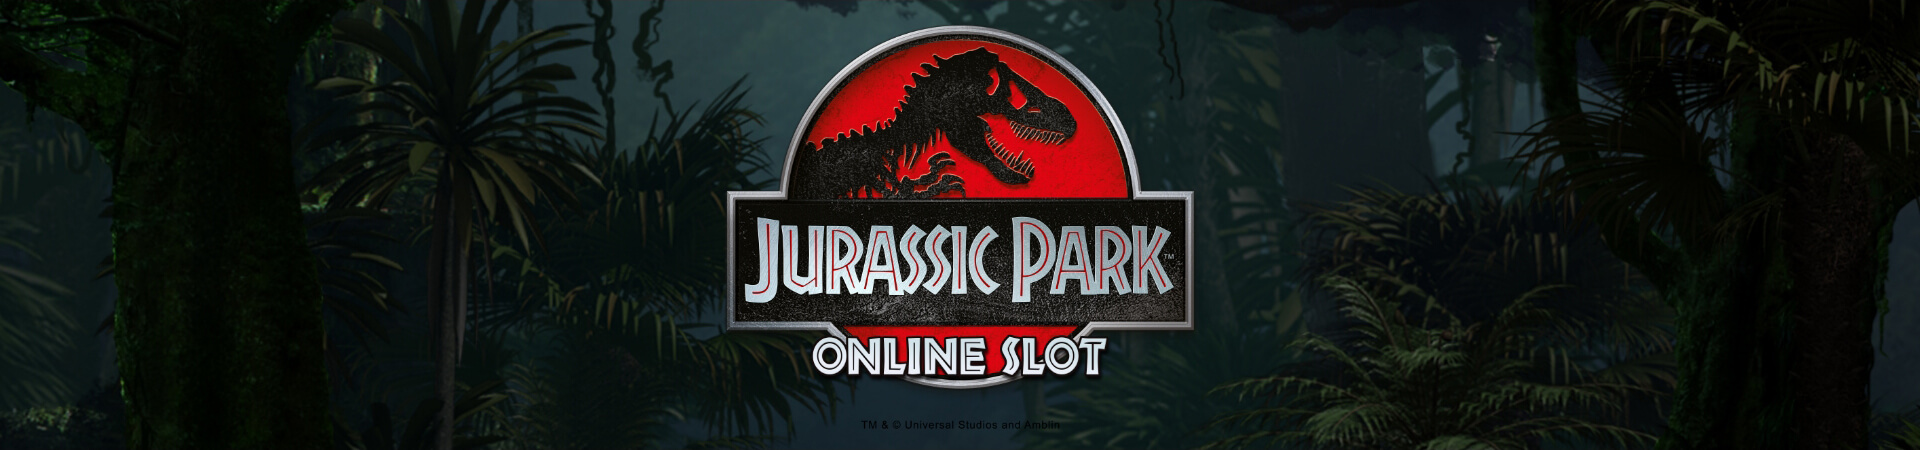 Jurassic Park Banner